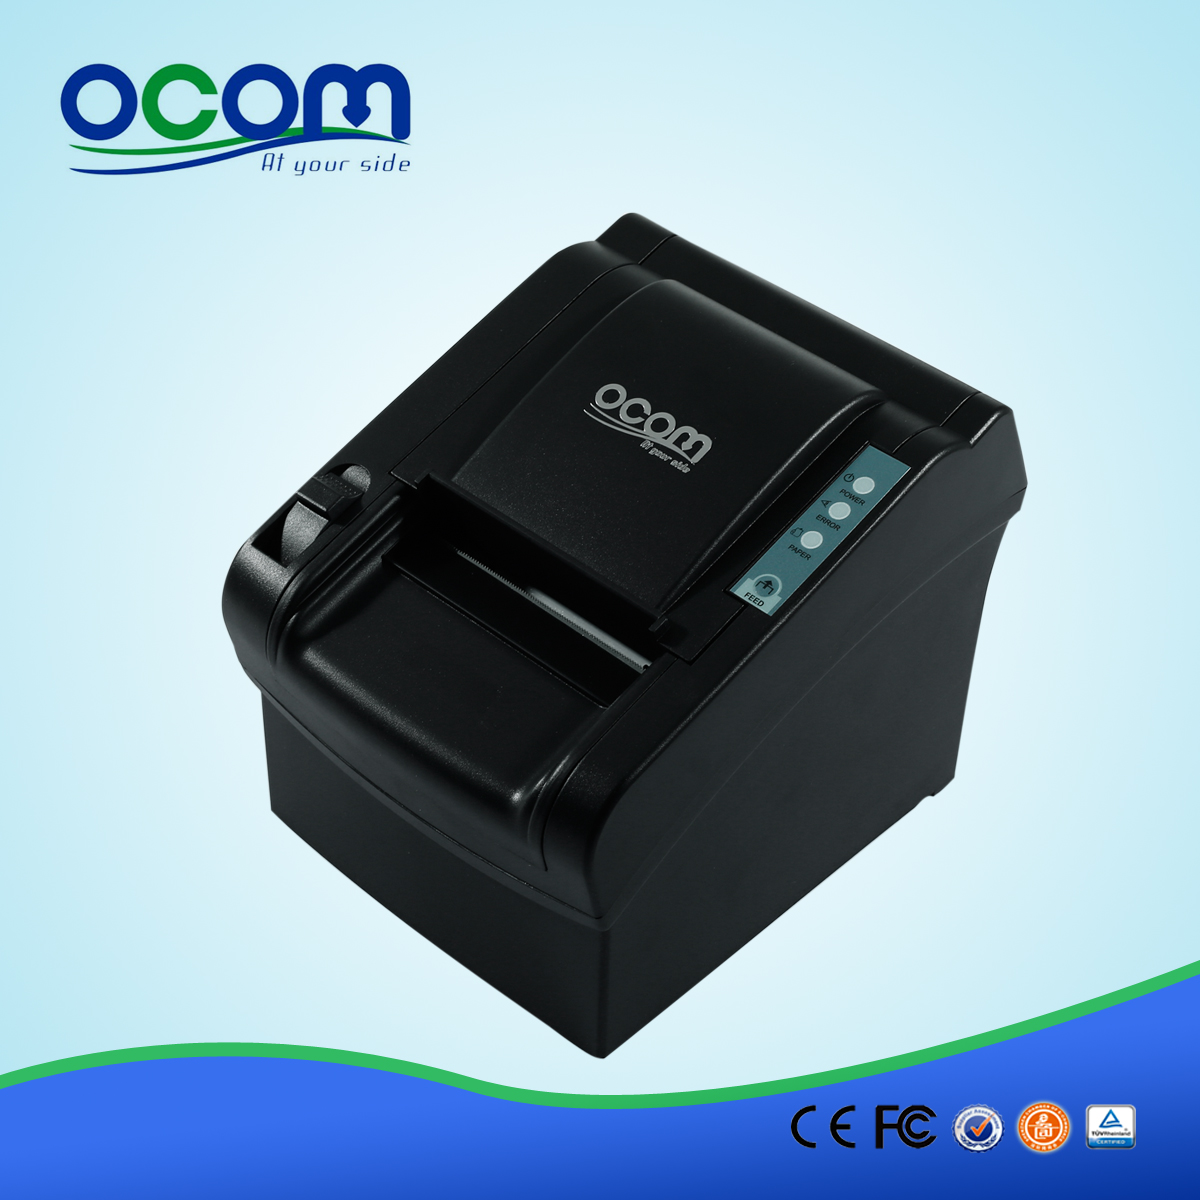 OCPP-802: en vente imprimante de reçus POS, 80mm imprimante ticket thermique